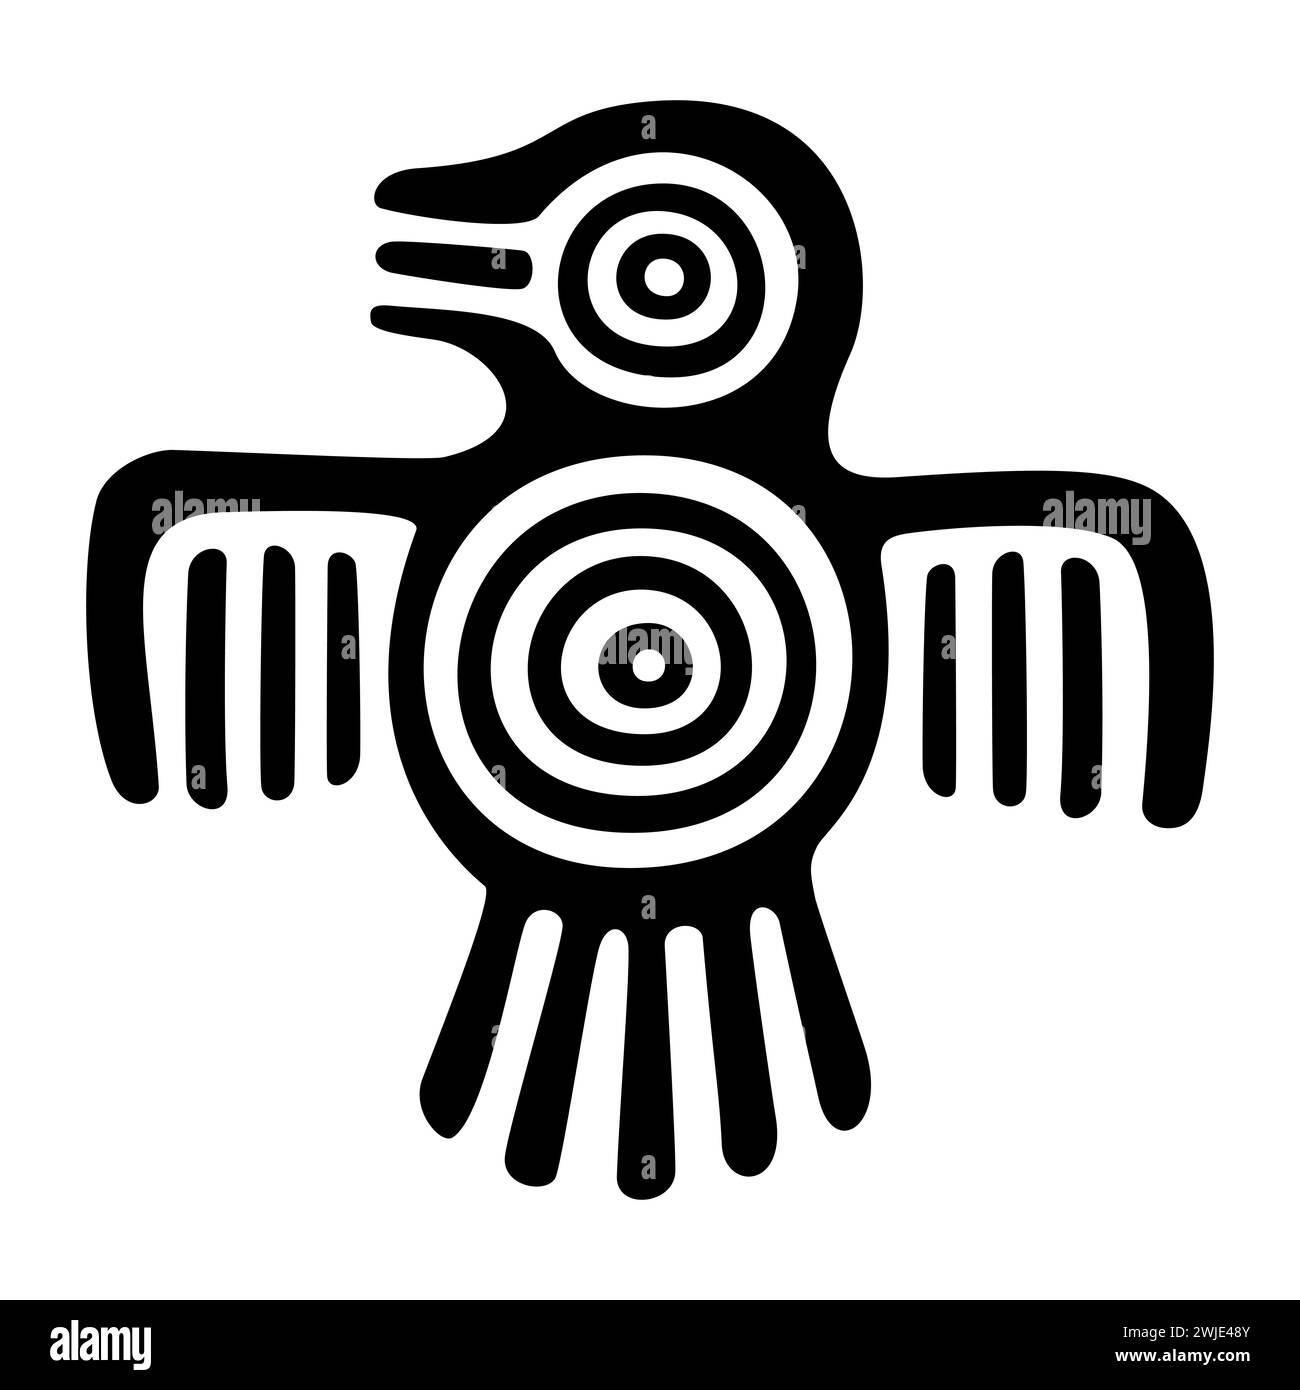 Fantastisches Vogelsymbol des alten Mexiko. Aztekische flache Stempelmotive, die einen Vogel zeigen, wie er in Tenochtitlan, dem historischen Zentrum von Mexiko-Stadt, gefunden wurde. Stockfoto